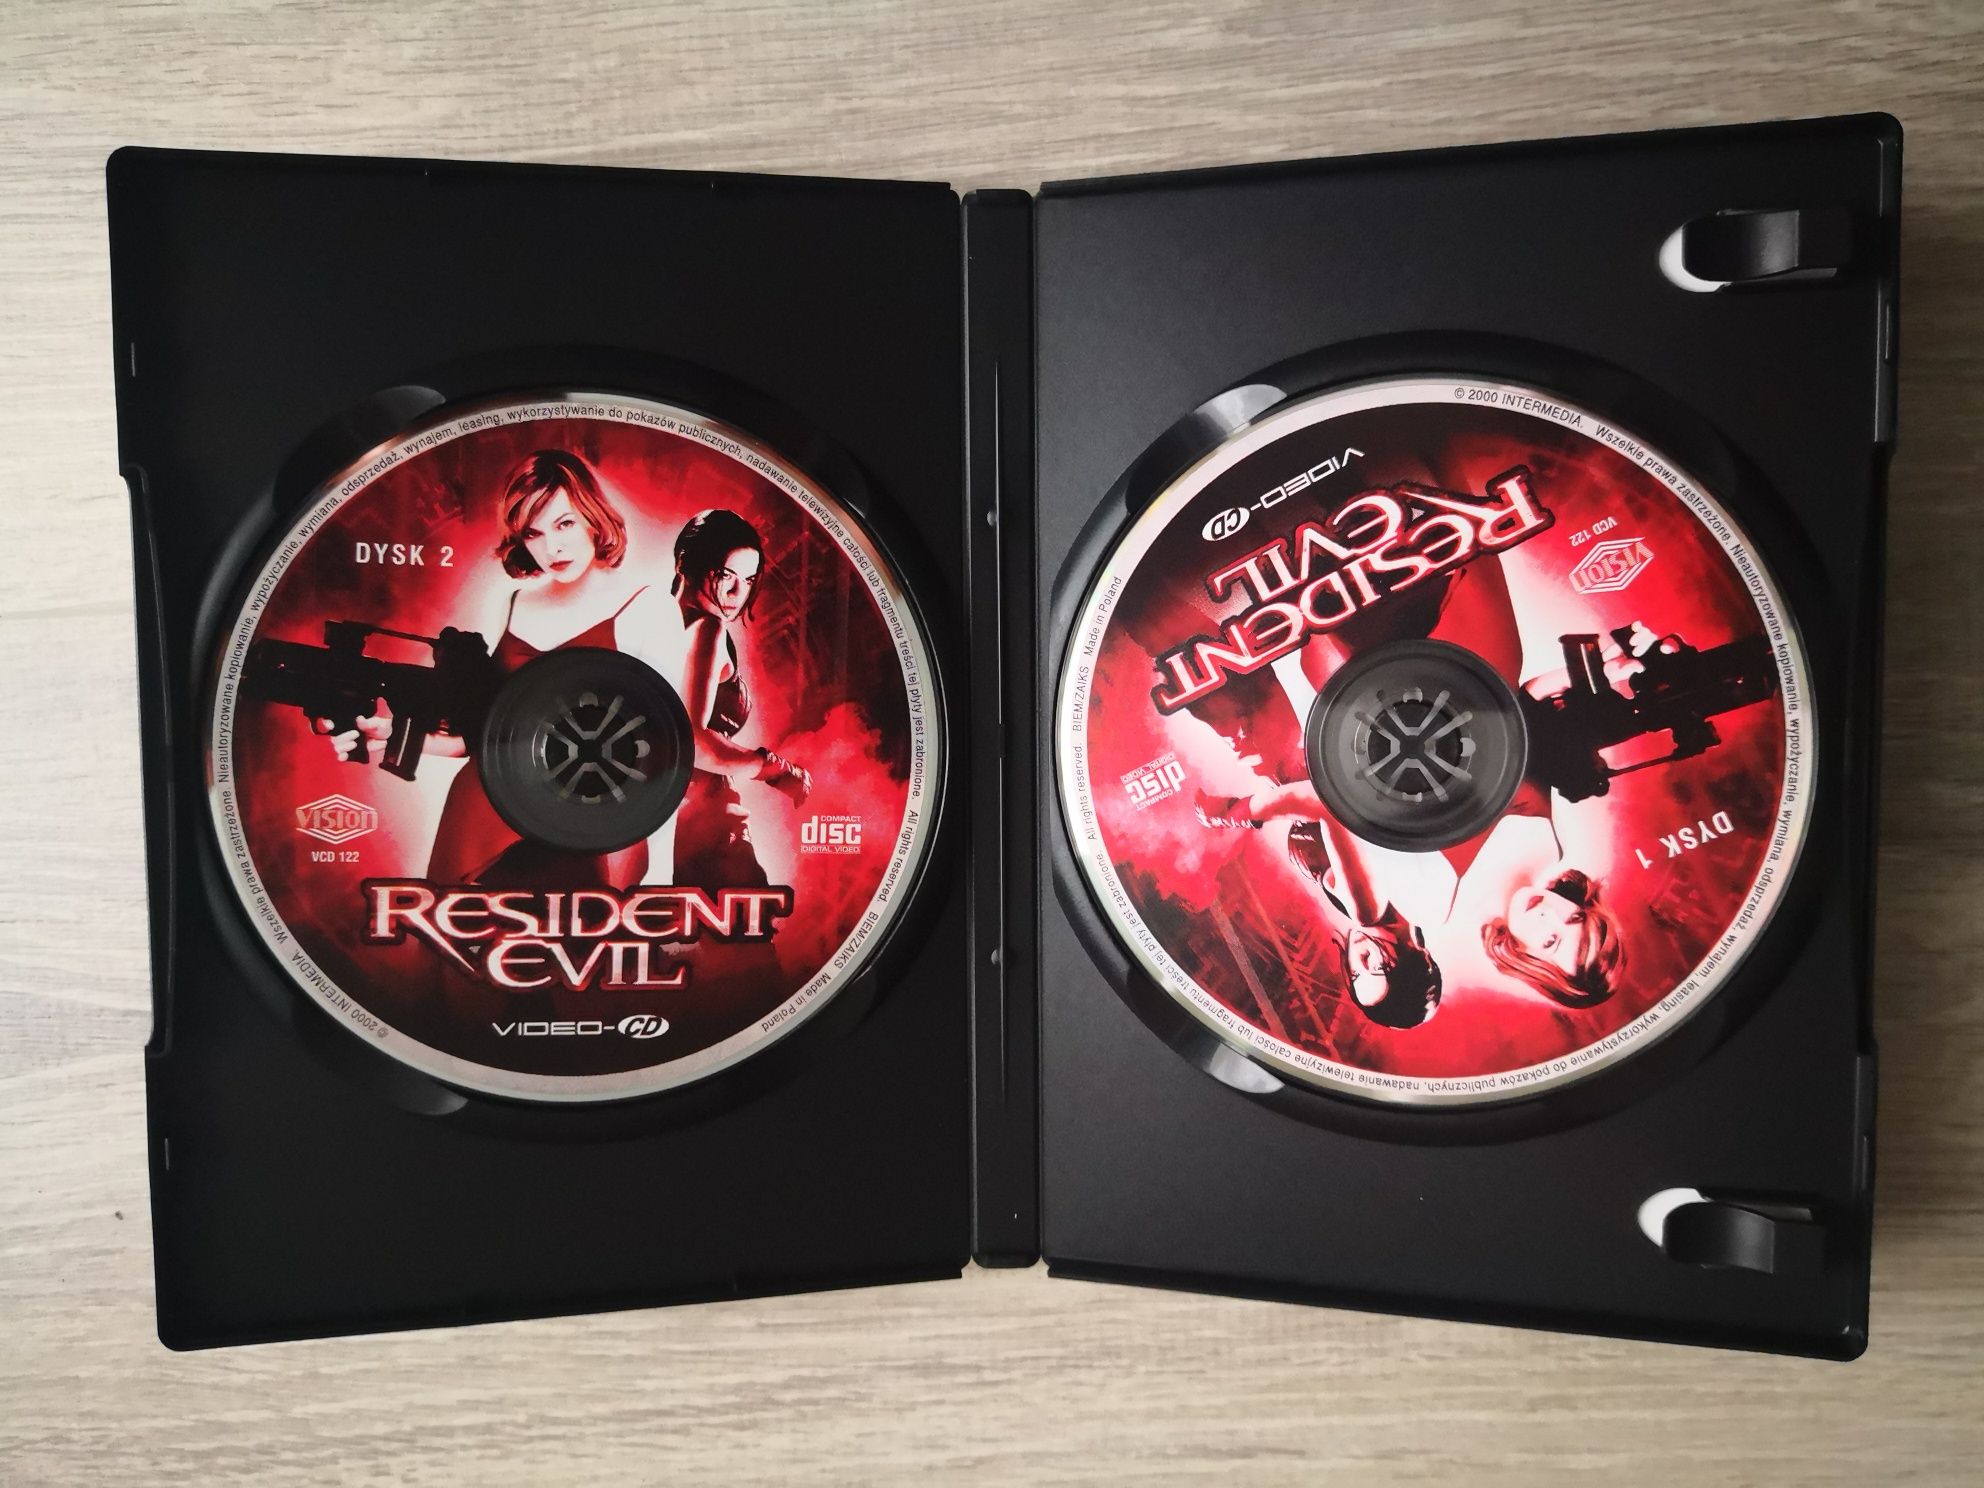 Film na Video CD: Resident Evil z Millą Jovovich